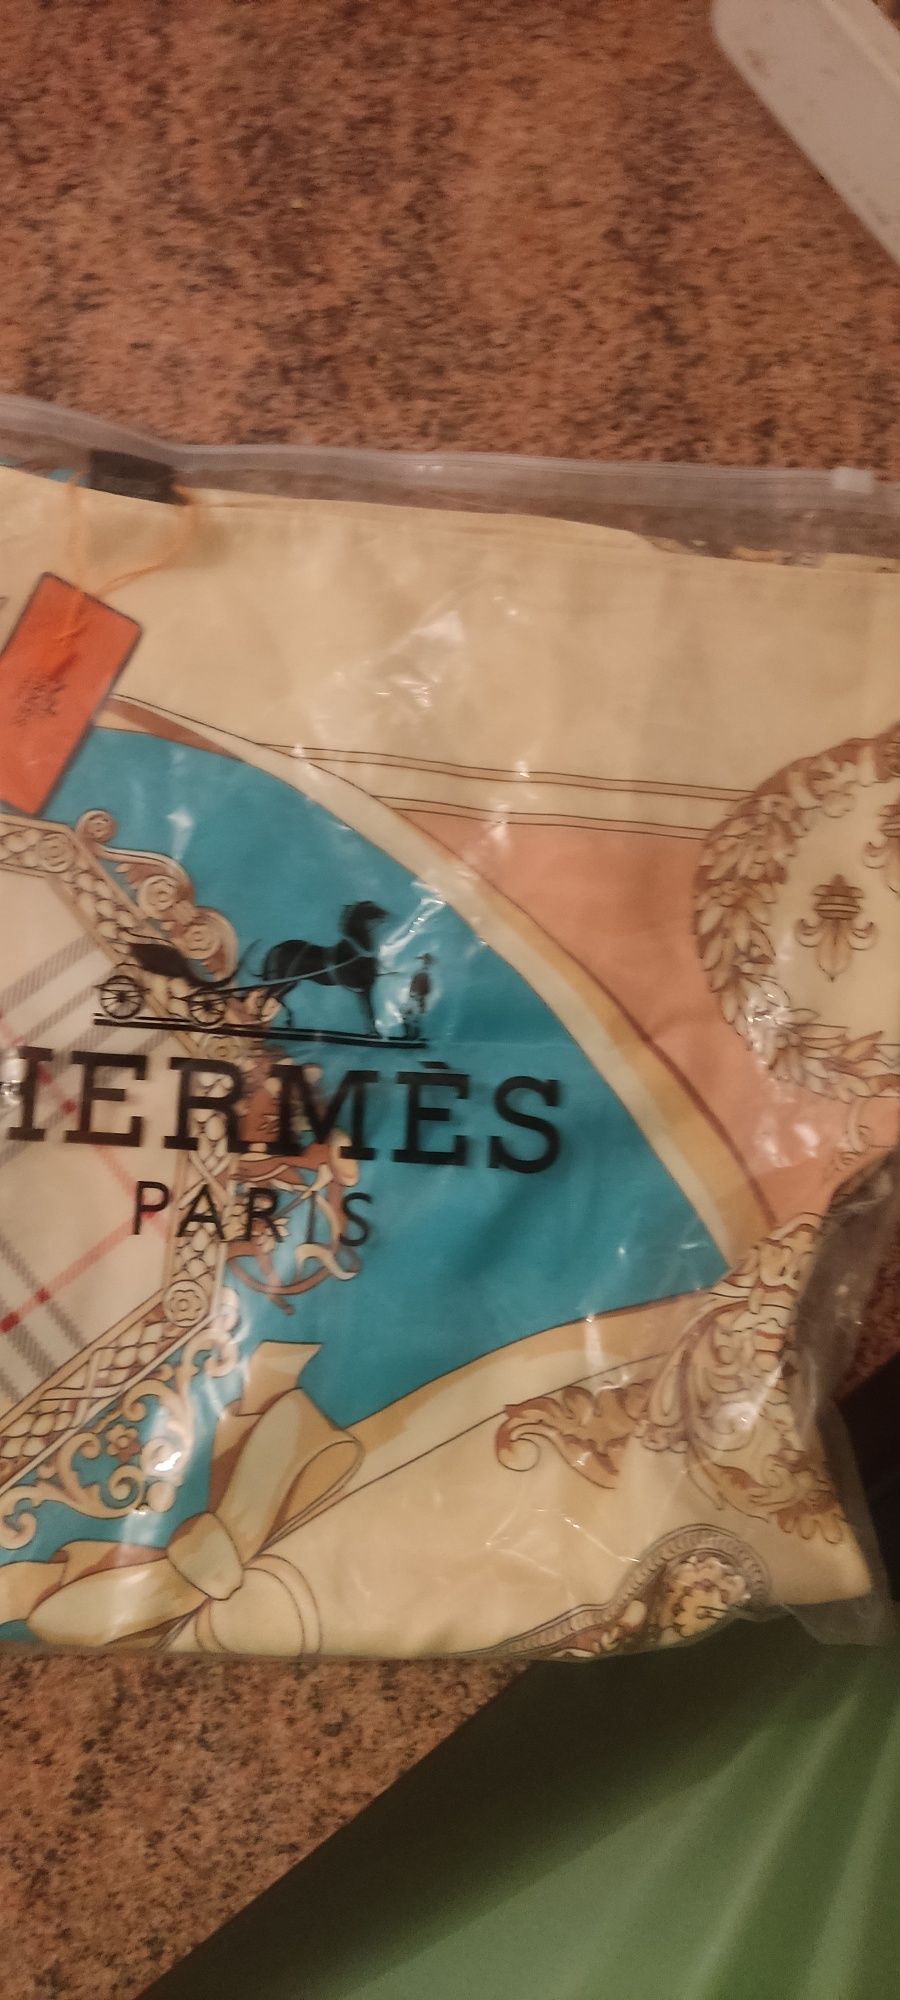 Платок Hermes Paris